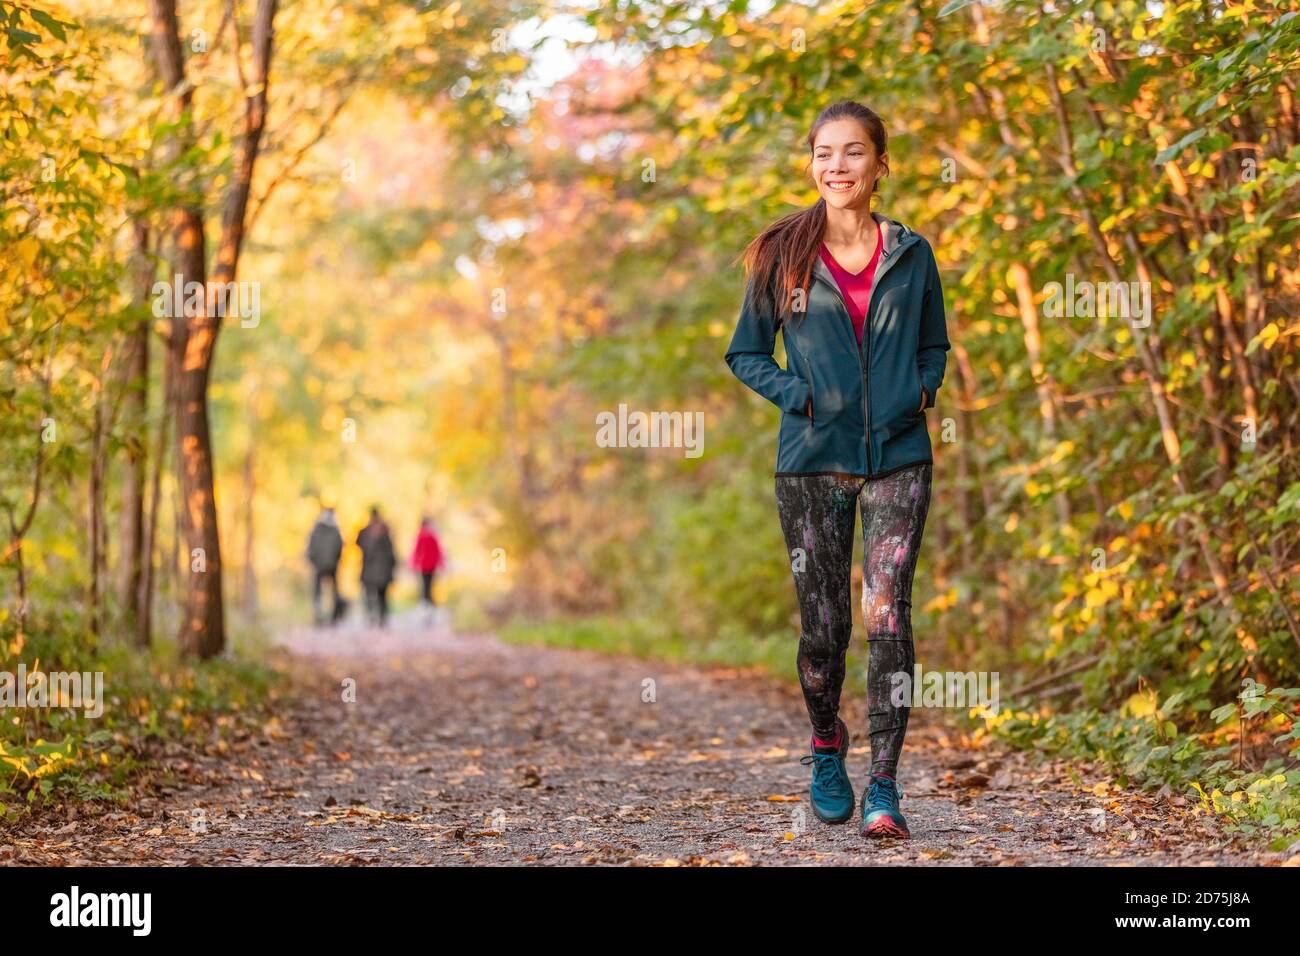 Frau zu Fuß im Herbst Wald Naturpfad Spaziergang auf Trail Wald Hintergrund. Glückliches Mädchen auf aktive Outdoor-Aktivität entspannen Stockfoto